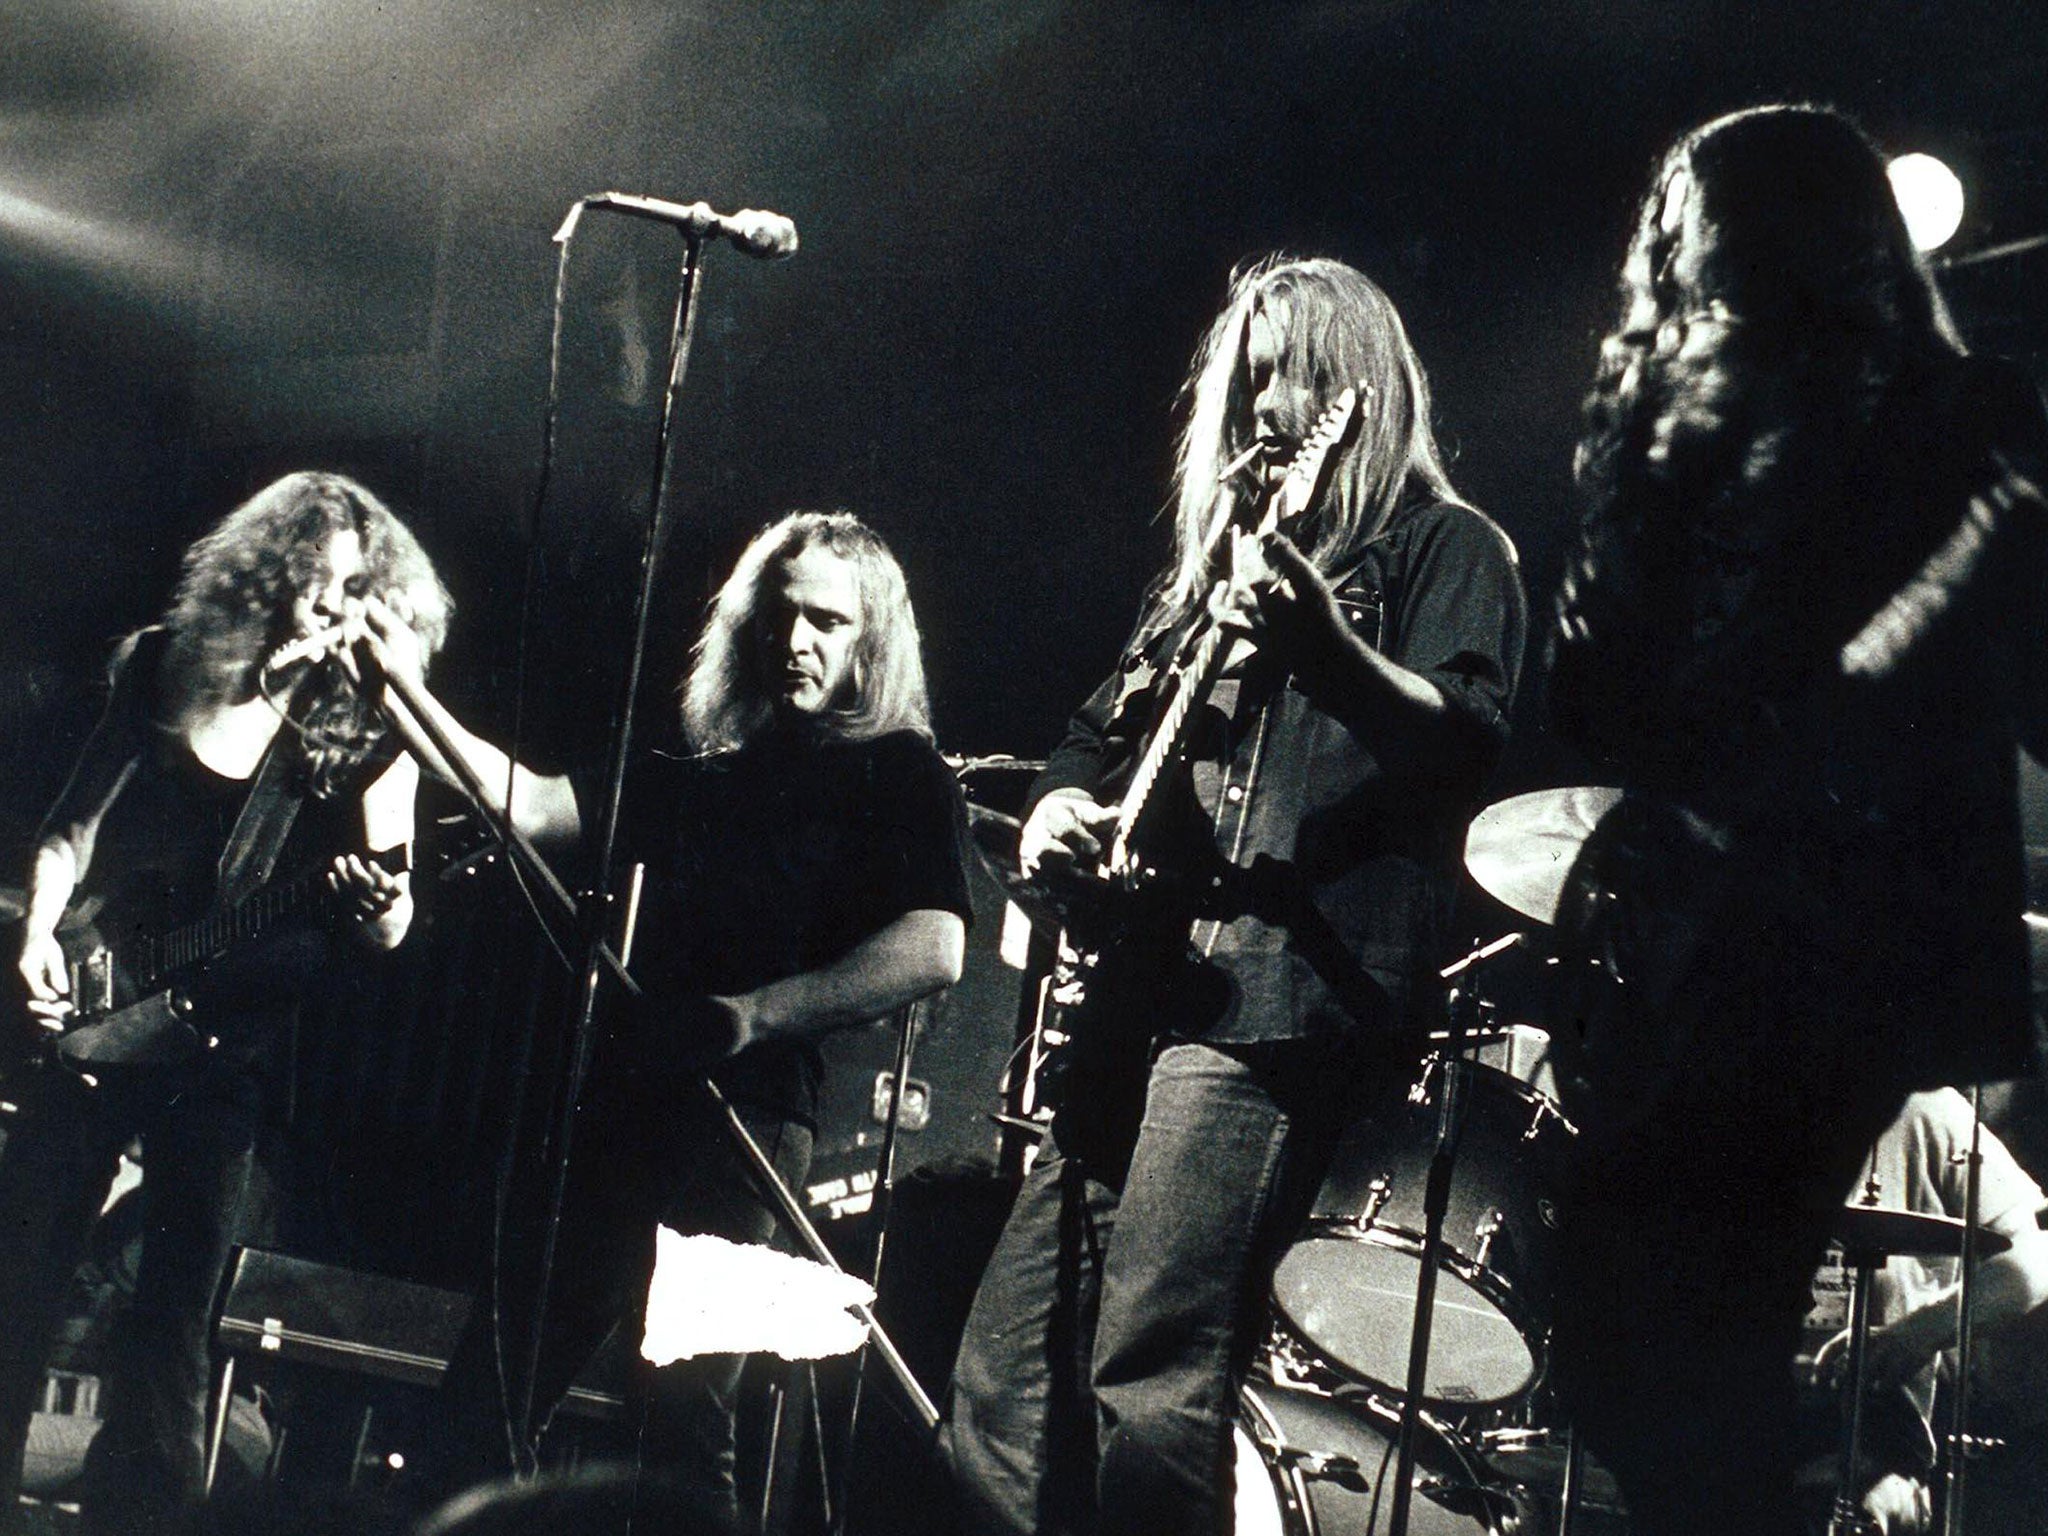 Jacksonville rock band Lynyrd Skynyrd perfoming in 1974